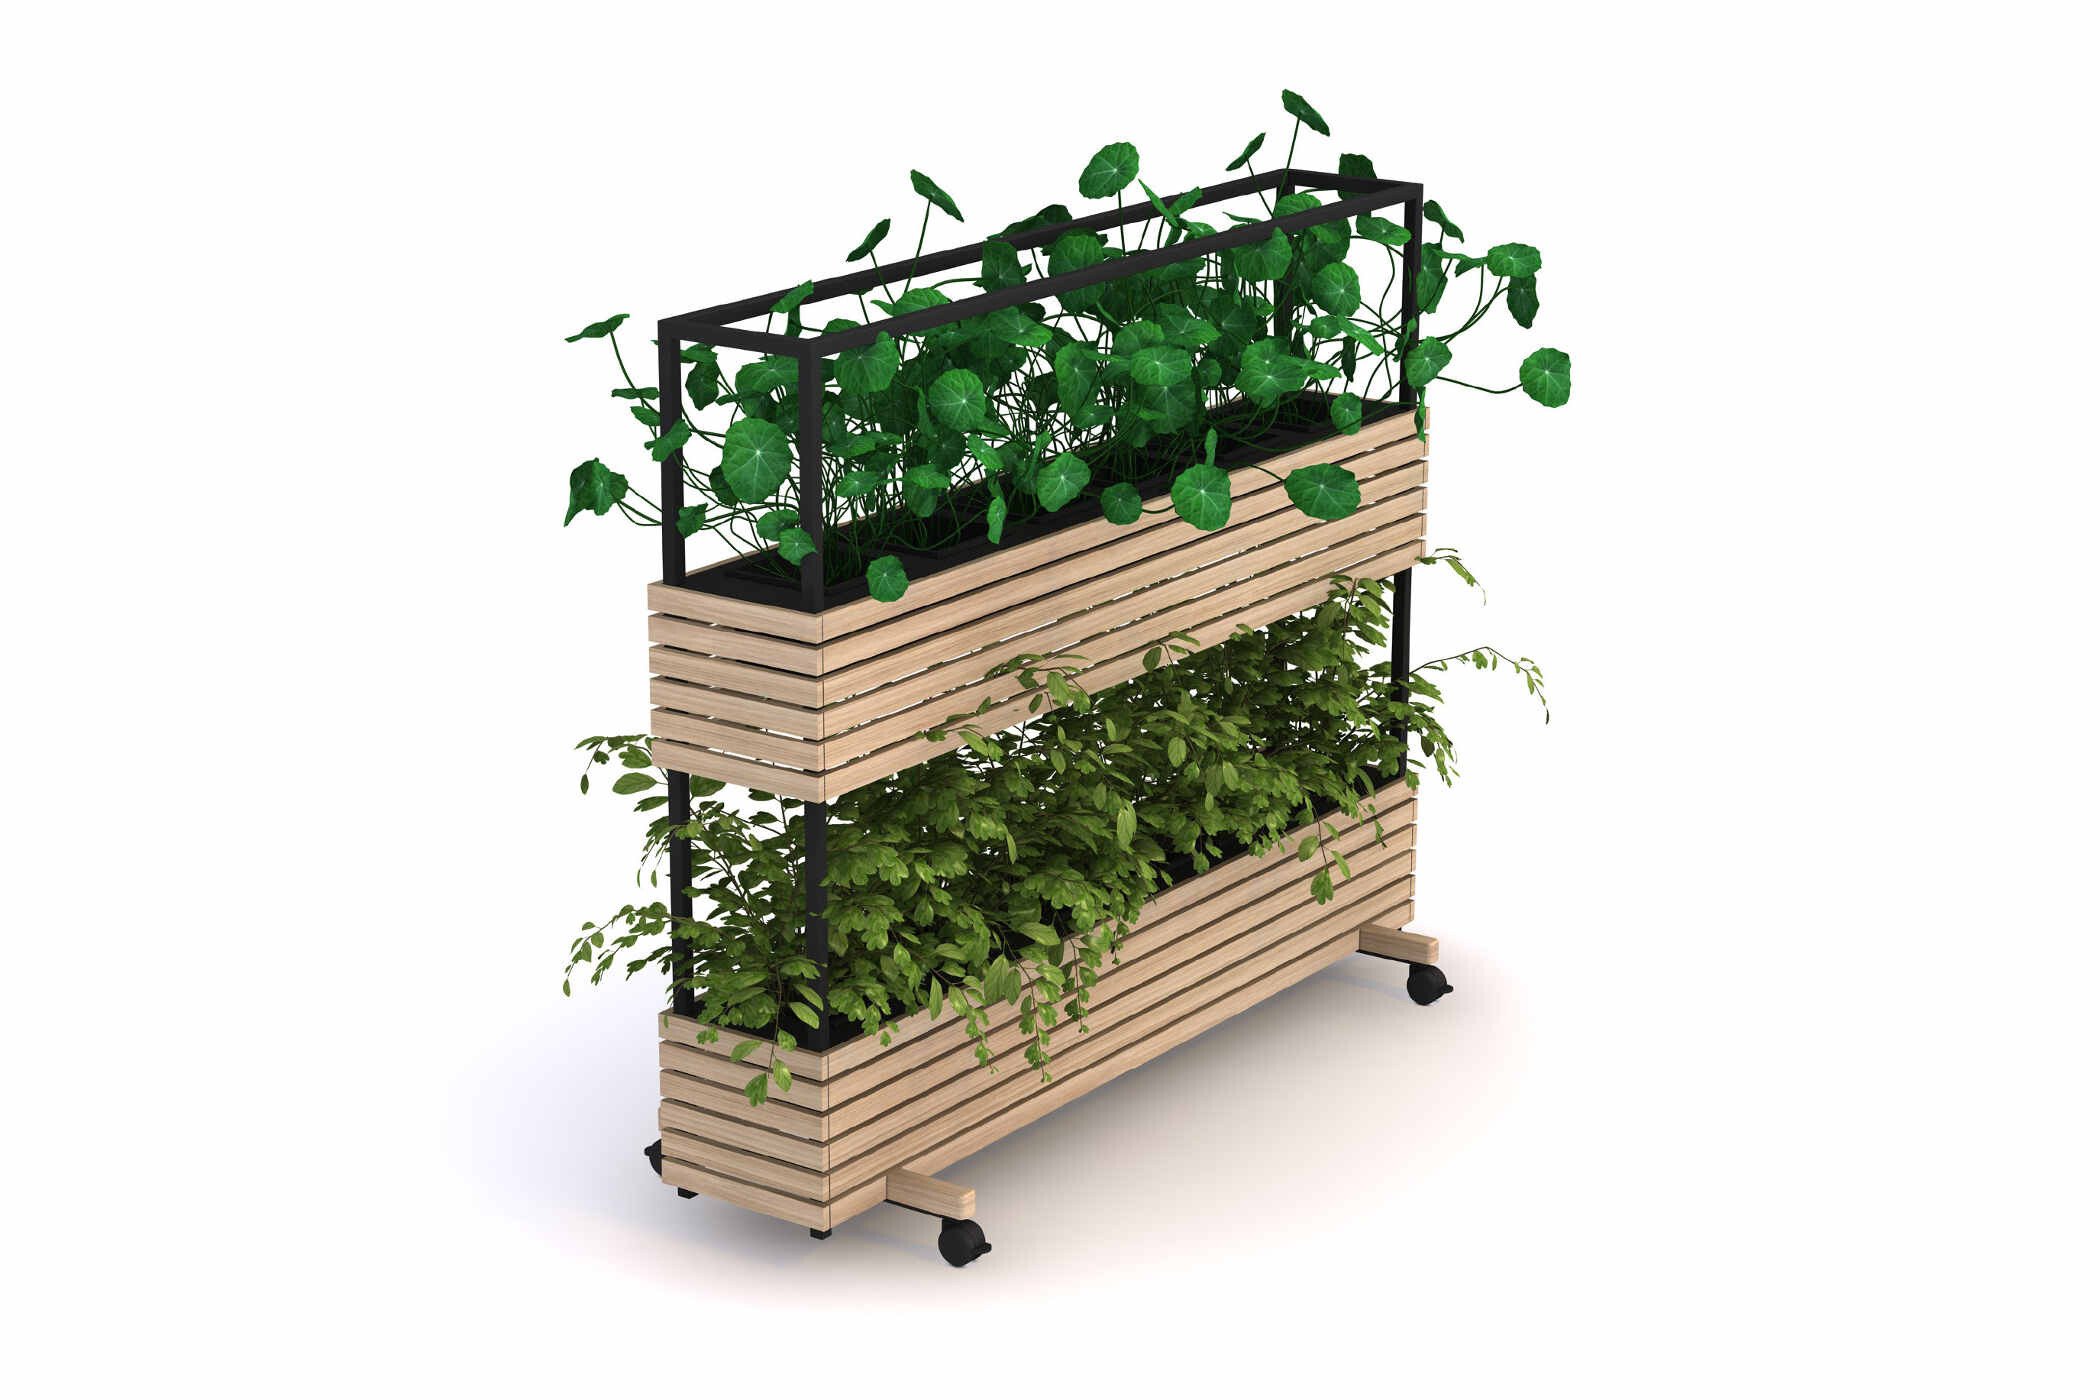 Intentie van volgorde Orangebox Woods plantenbakken (B2B) - De Projectinrichter